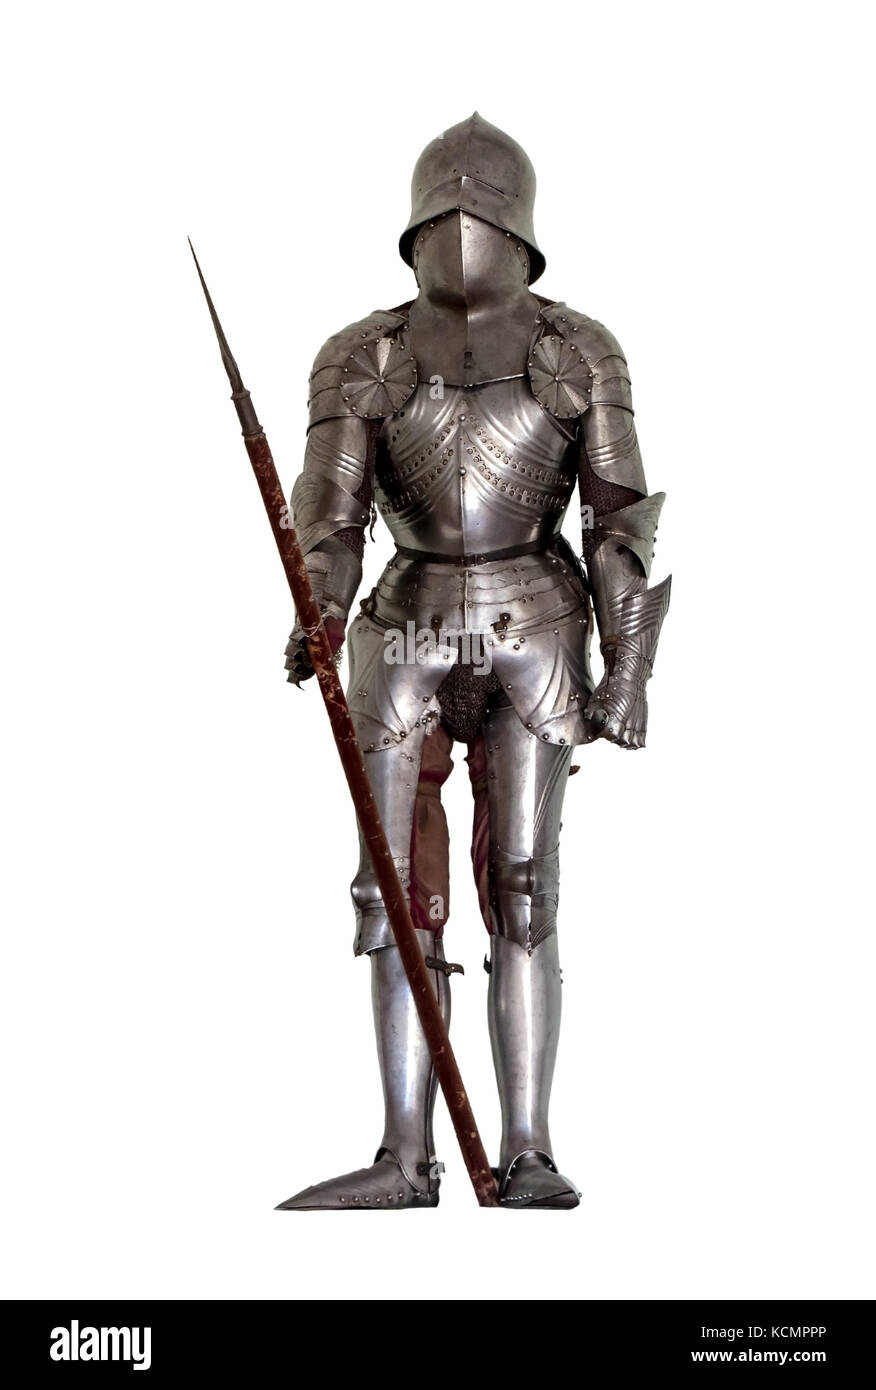 Armure de chevalier médiéval 200 cm en acier du Guesclin